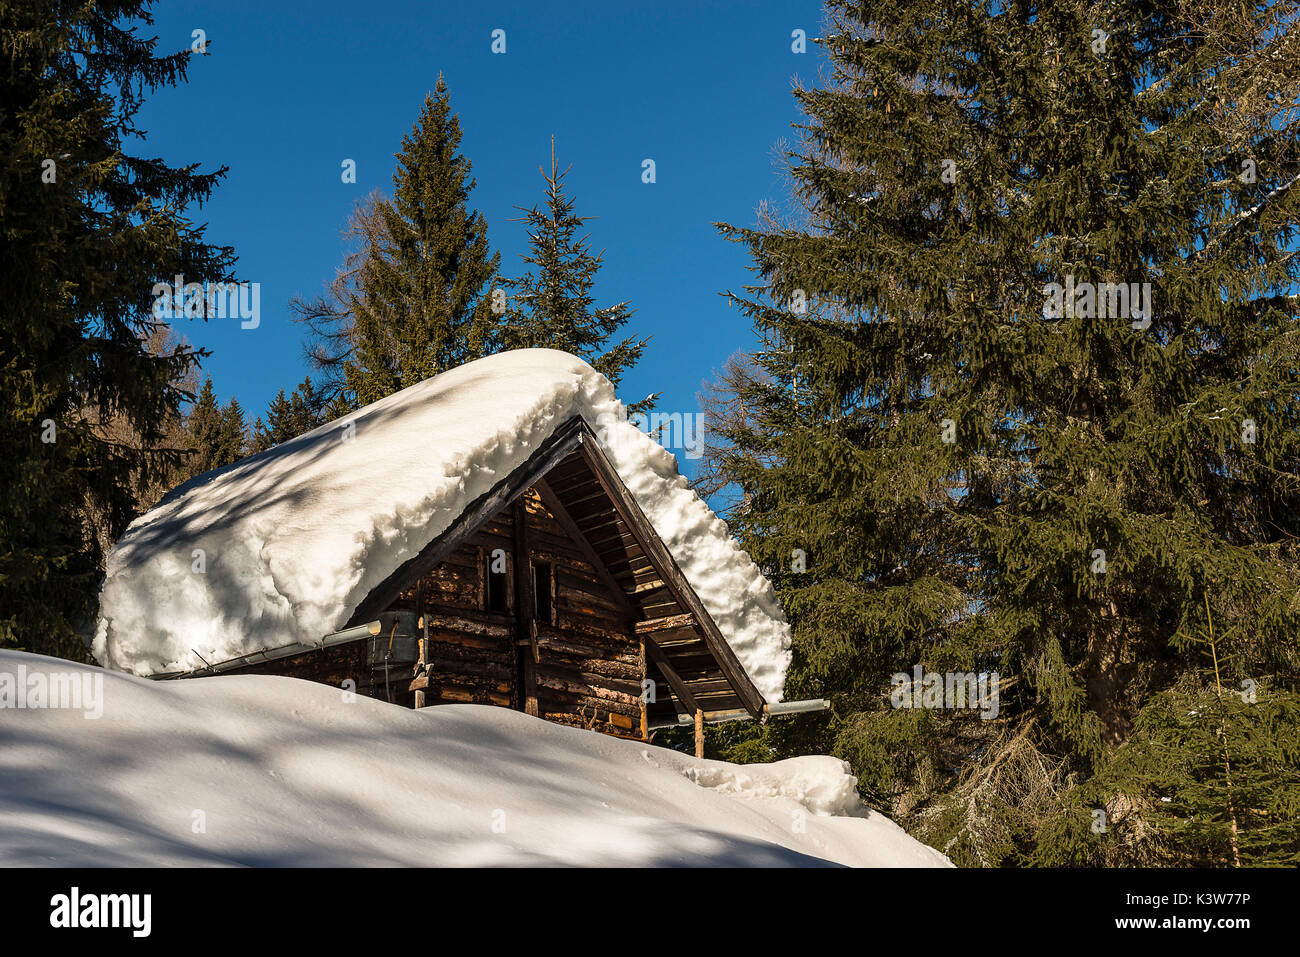 L'Italia, Trentino Alto Adige, Val di Non, neve sul tetto di una capanna in un inverno segnato dalla forte nevicata. Foto Stock